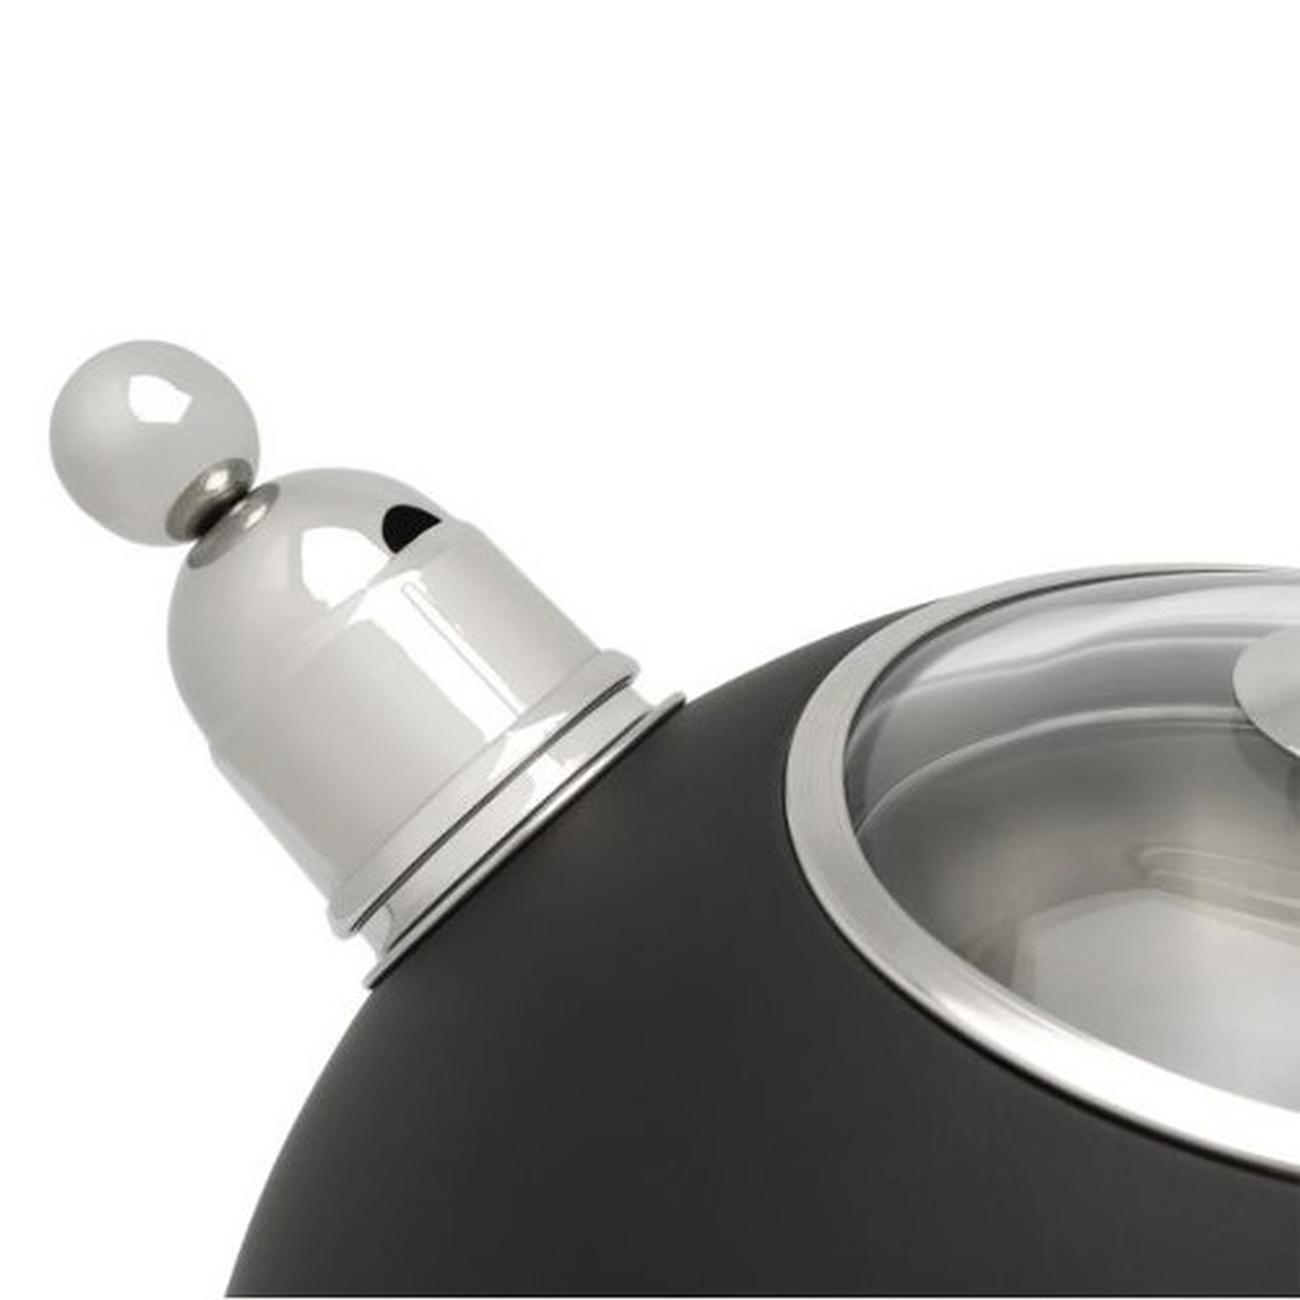 bredemeijer-tea-kettle-2.5l-matte-black - Bredemeijer Tea Kettle 2.5L Matte Black